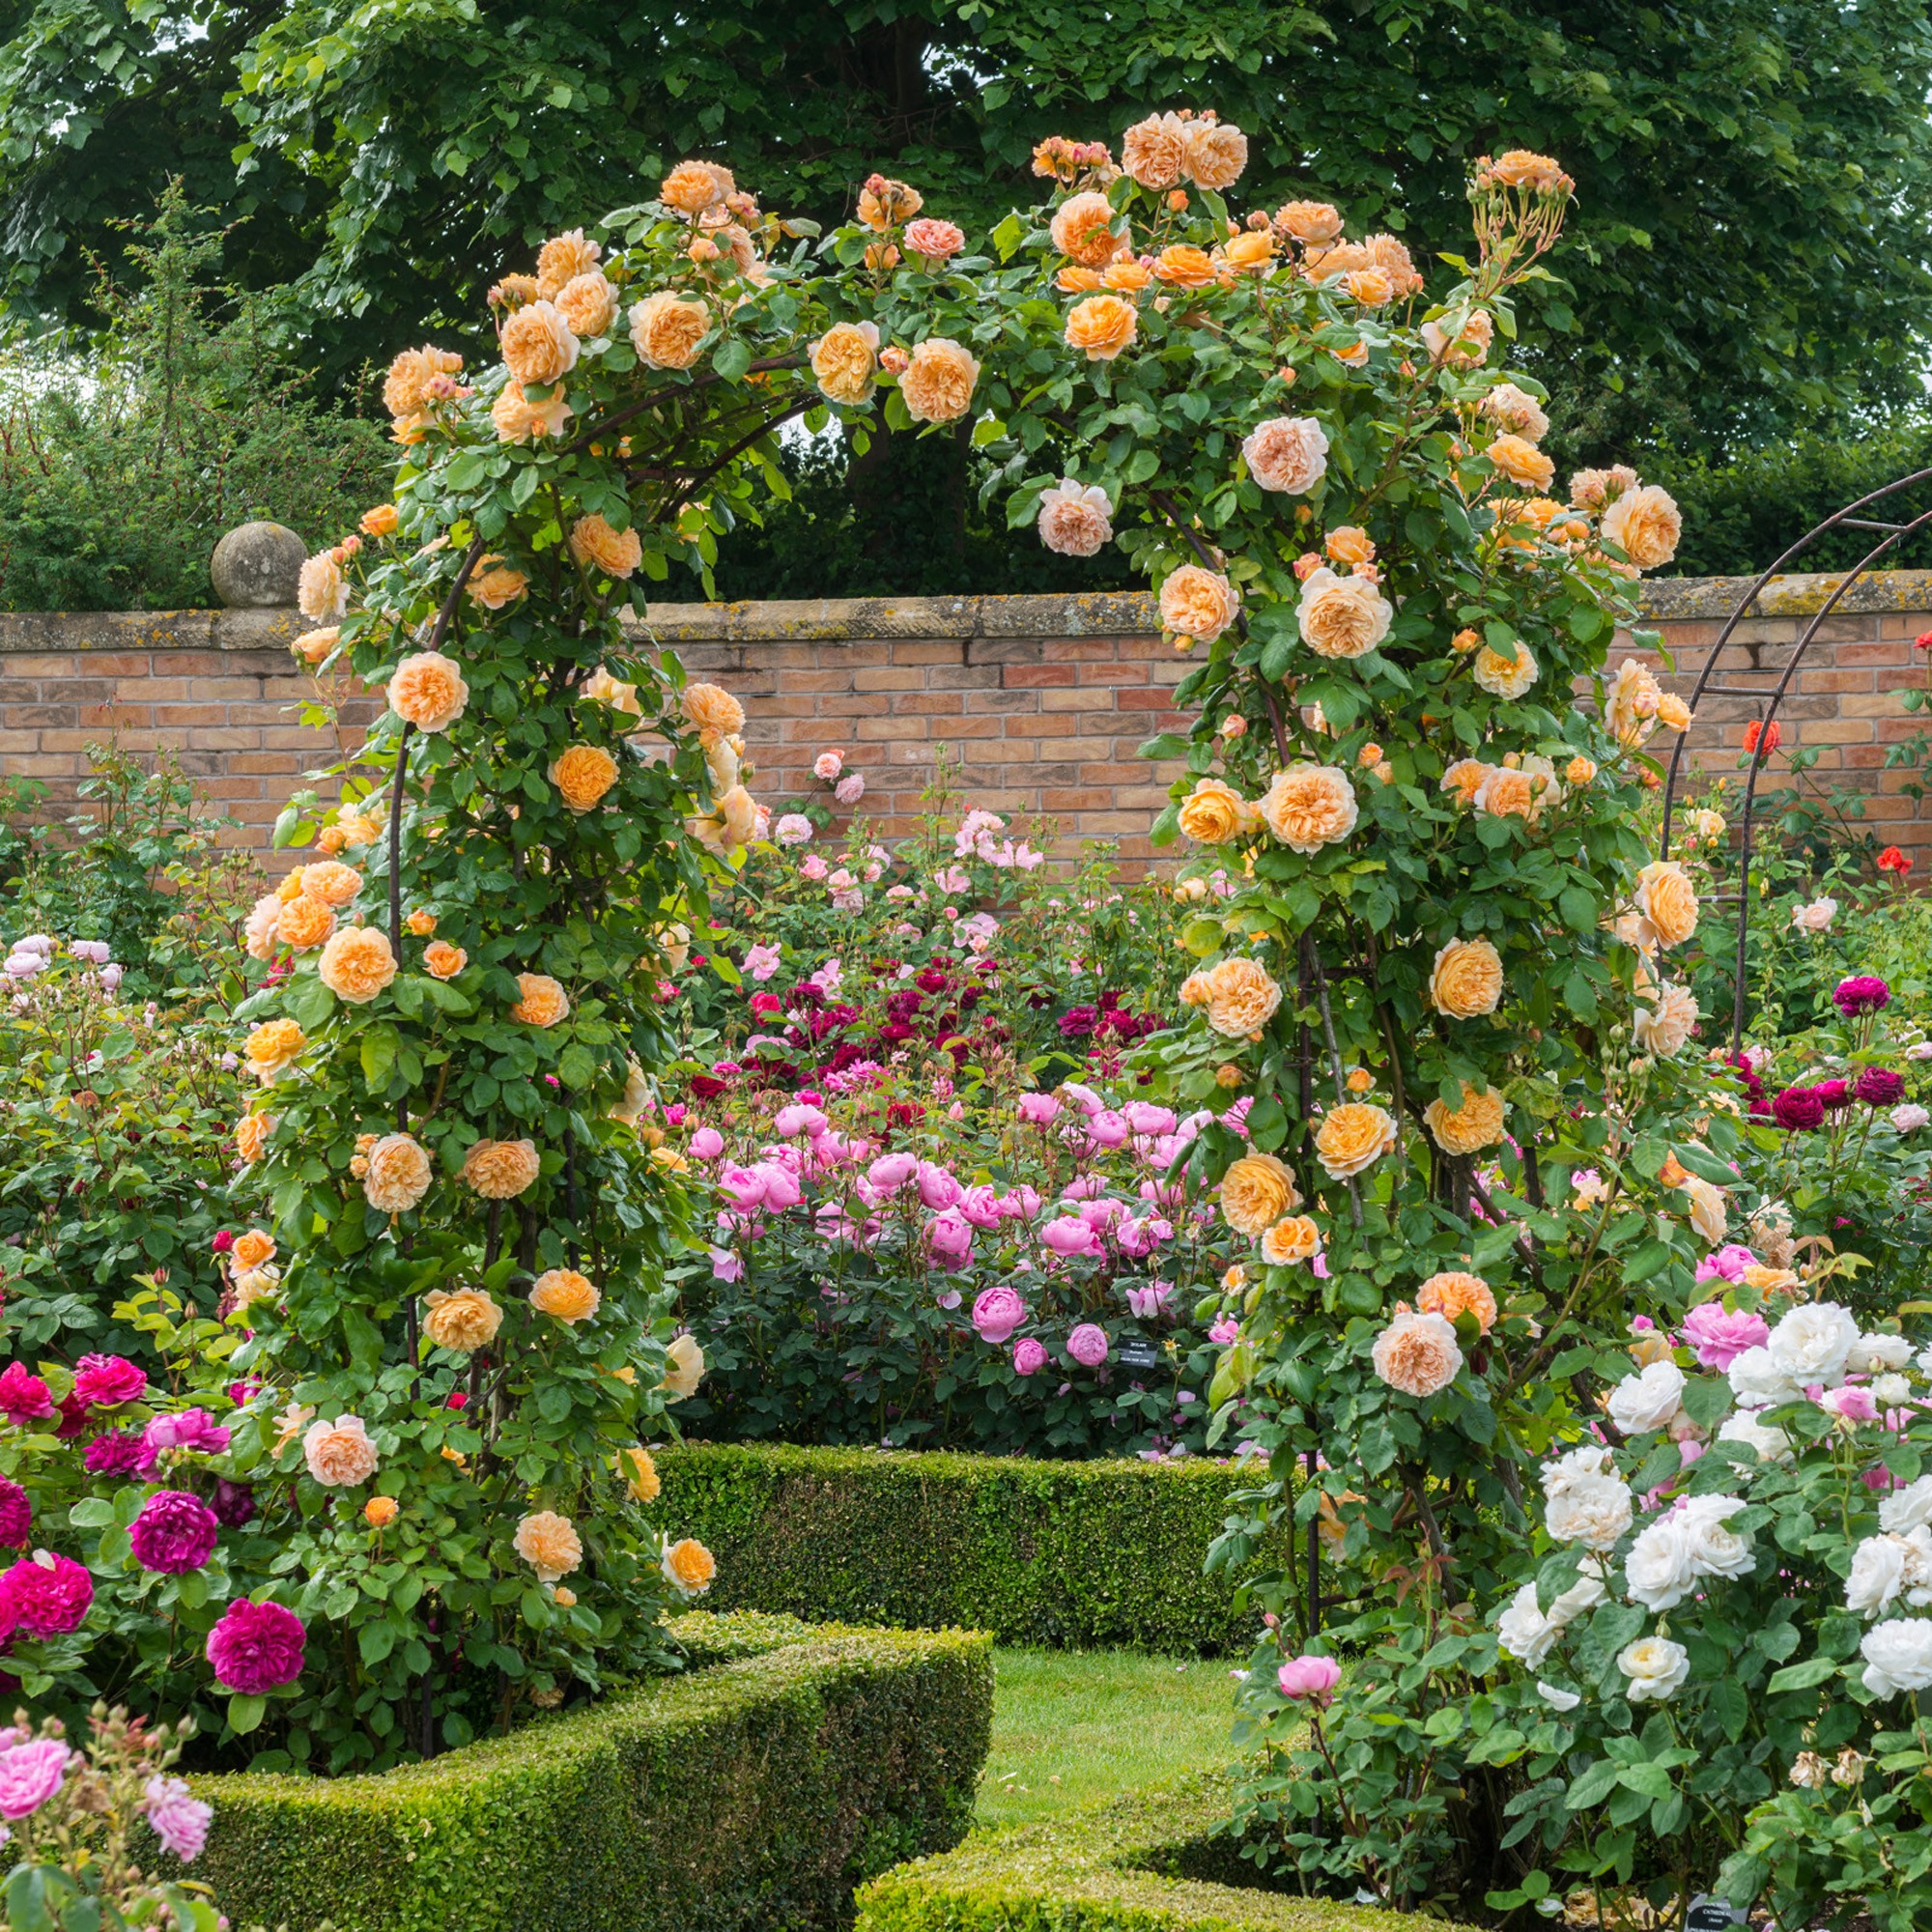 CỔNG VÒM HOA HỒNG LEO cao 3M15 - Dùng làm khung cổng hoa hồng giàn leo, giá đỡ cho cây hoa hồng leo, cây hoa leo - Giúp cây không bị đổ ngã - Tạo không gian đẹp cho khu vườn